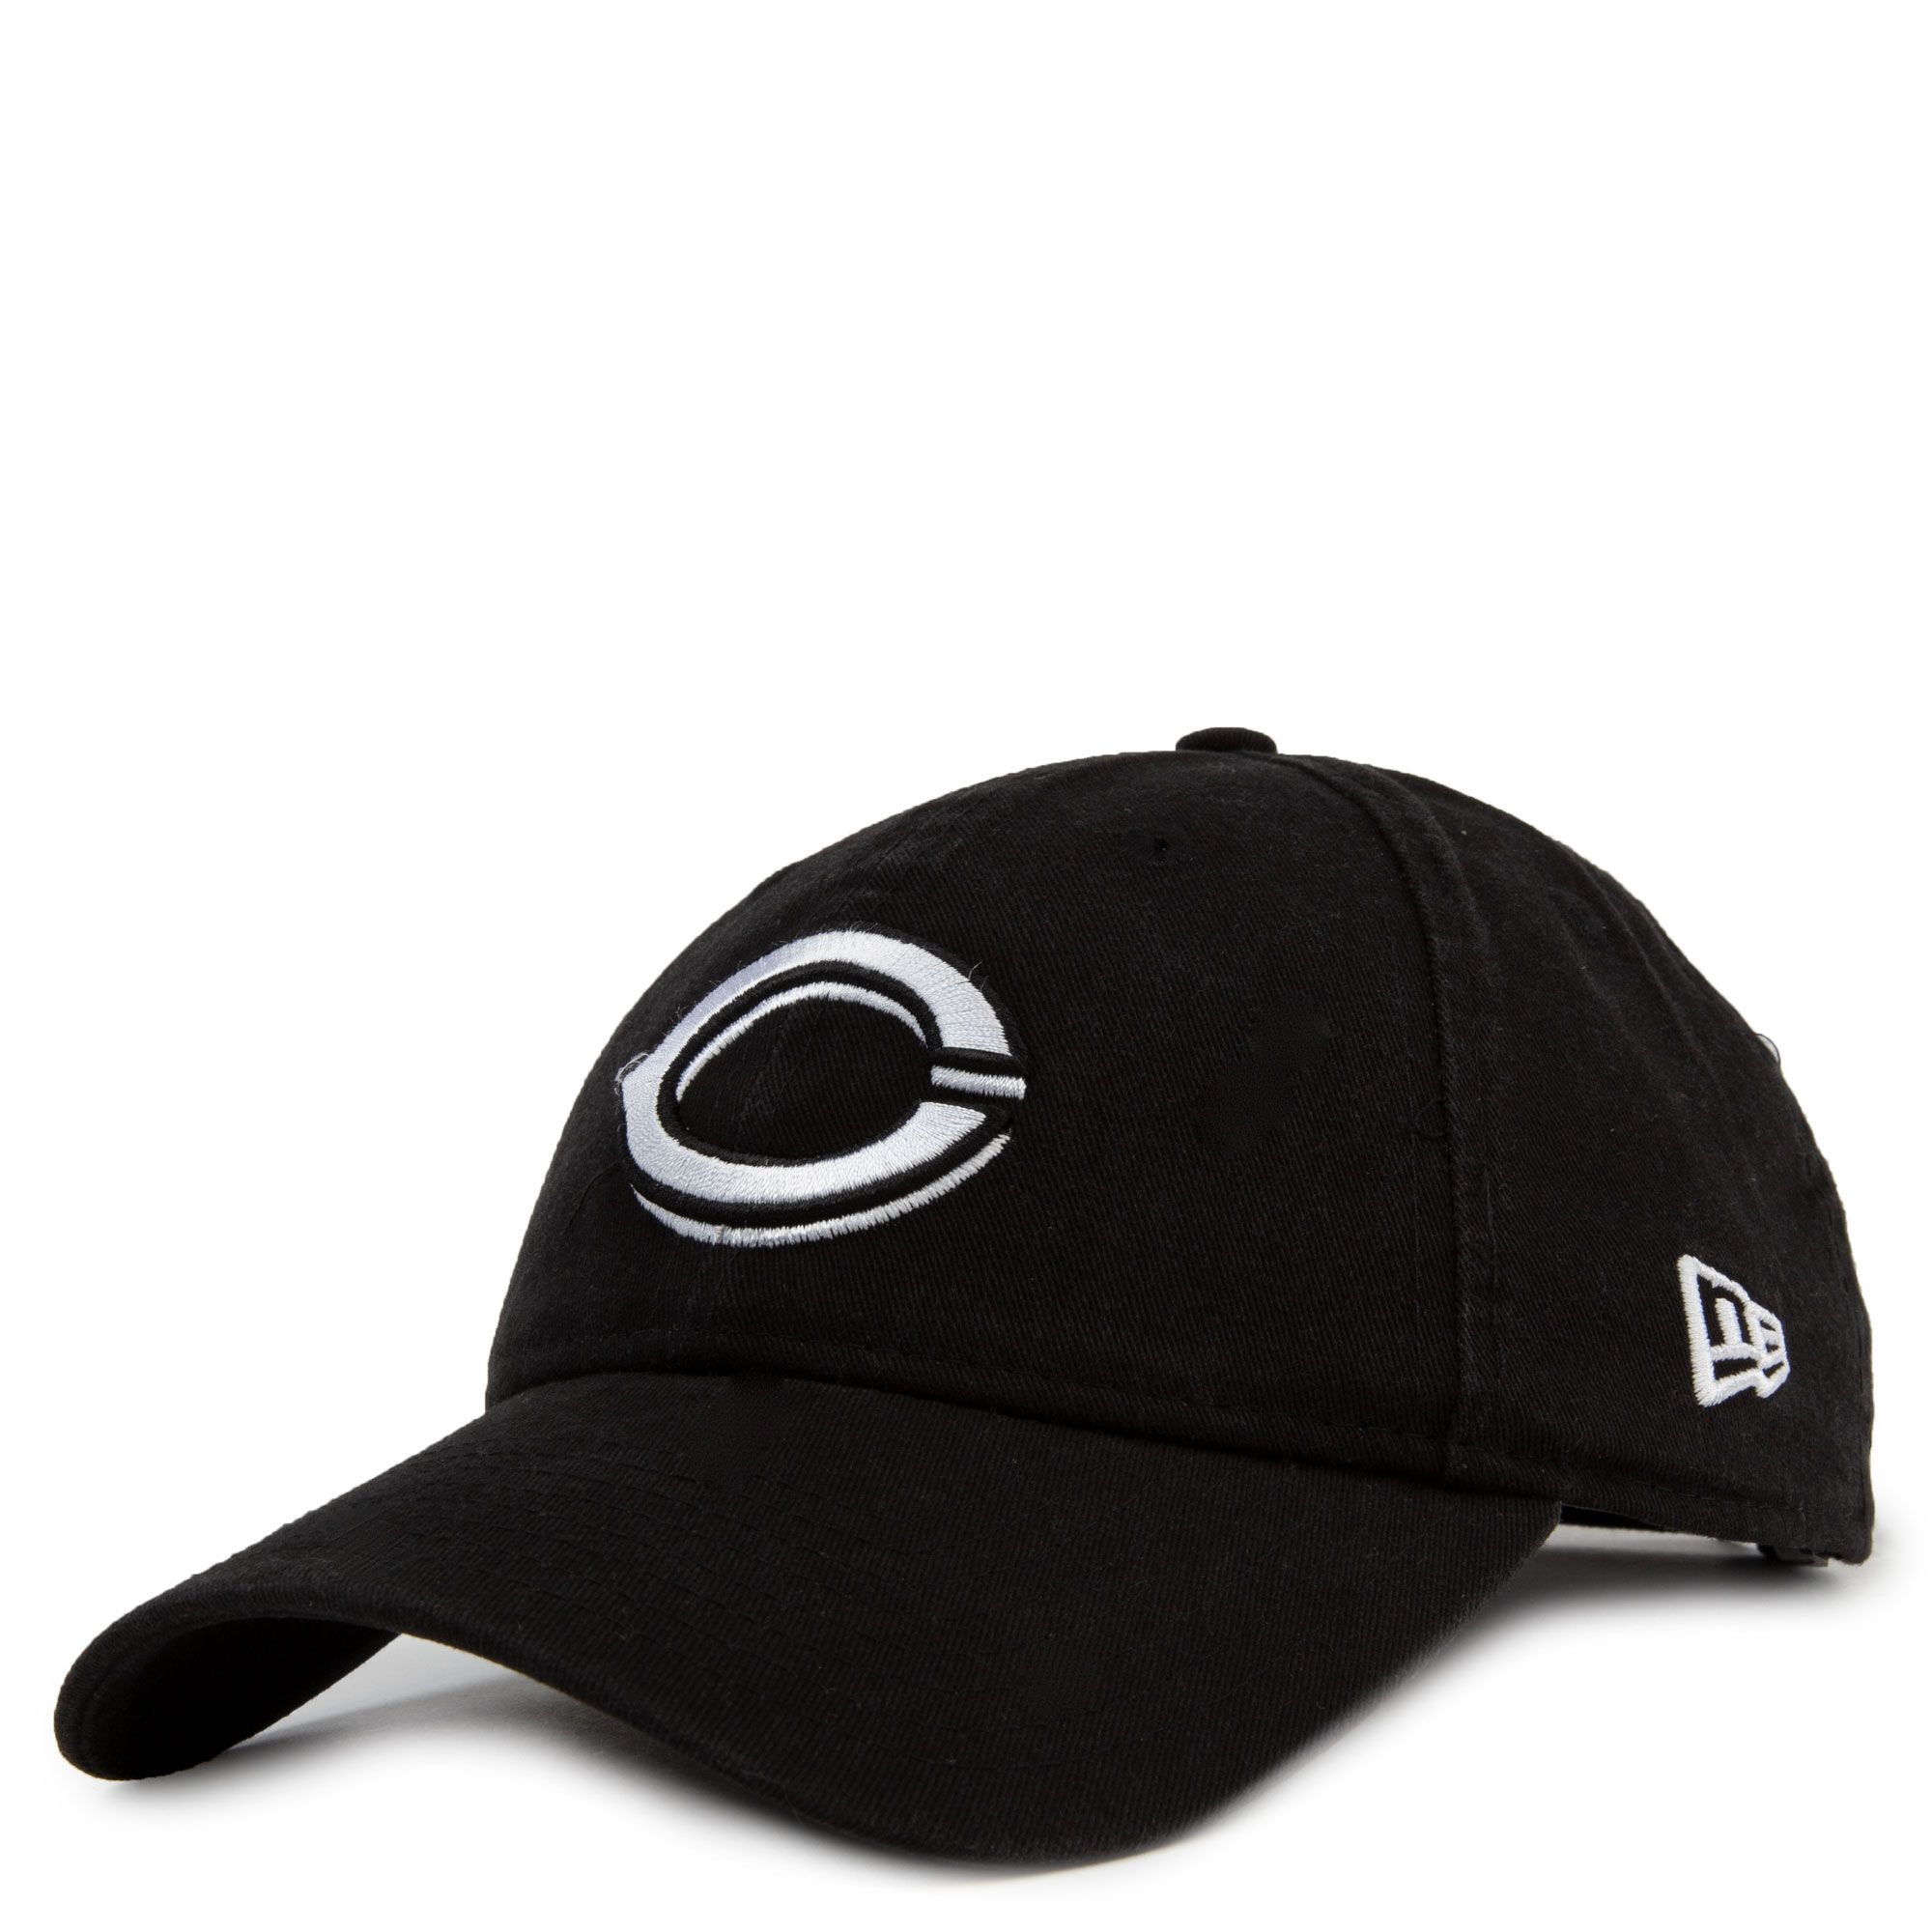 Cincinnati Reds Core Classic Hat